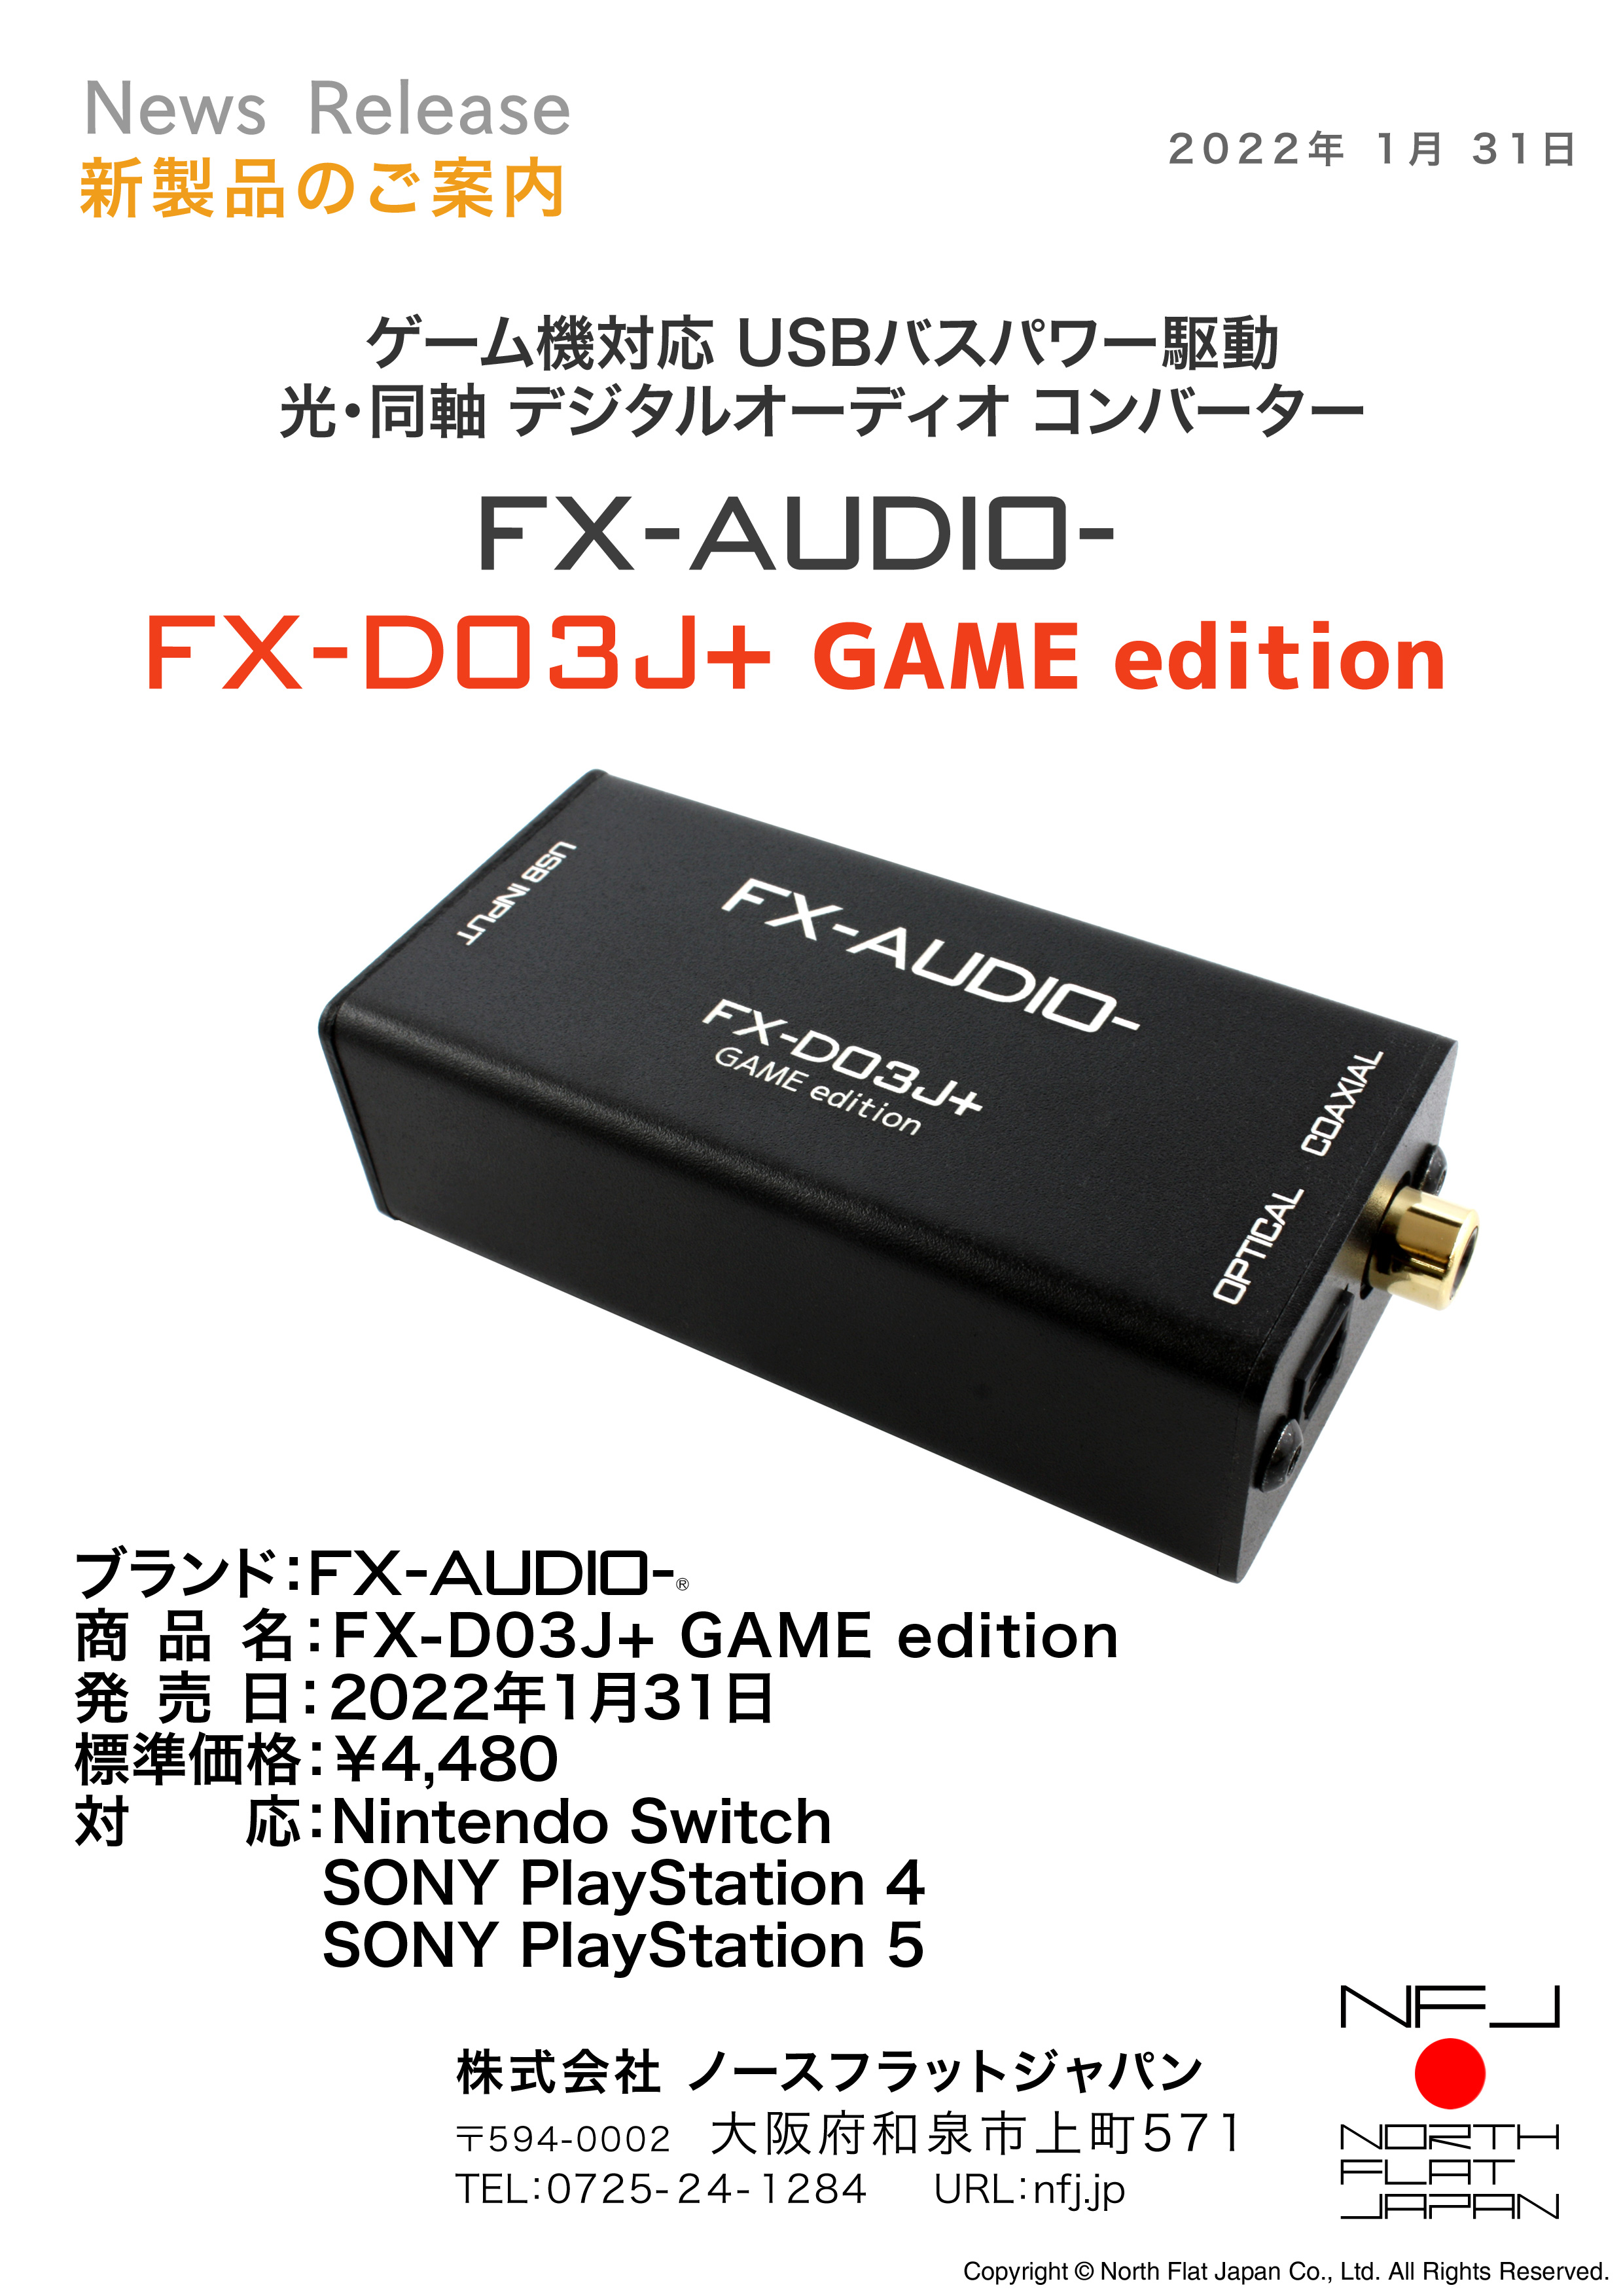 ゲーム機対応のUSB接続DDC FX-AUDIO- 『FX-D03J+ GAME edition』を新